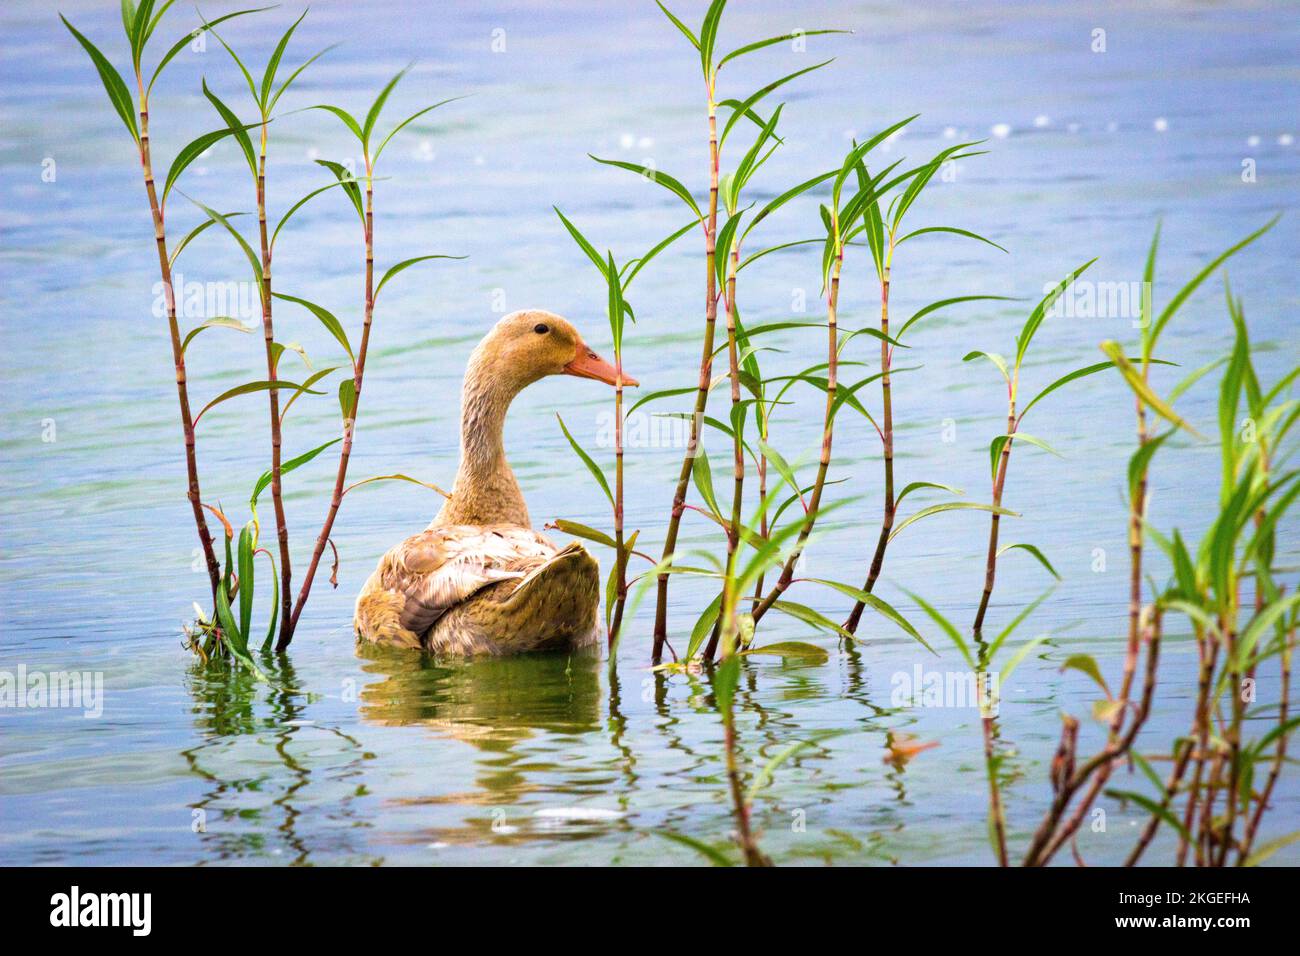 Ente, auch bekannt als Wasservögel, der auf dem Wasser in einem See ruht Stockfoto